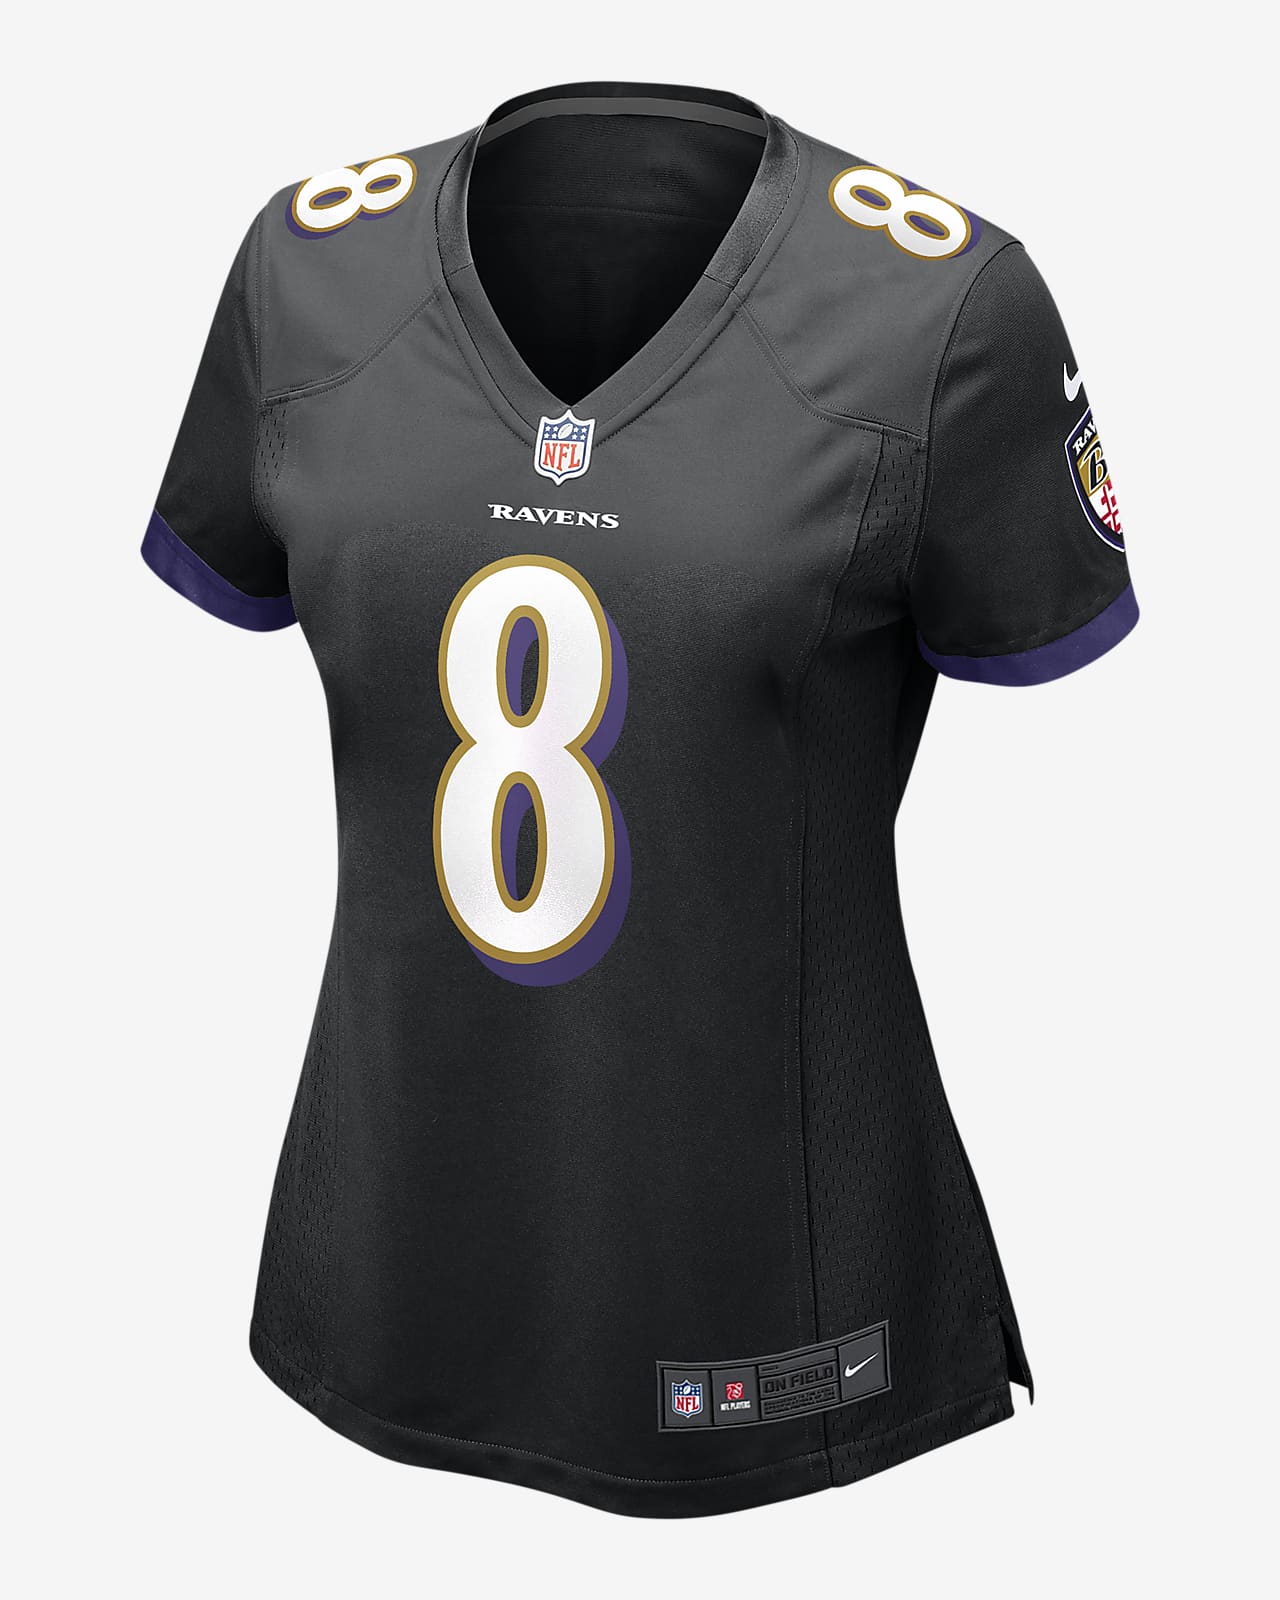 NFL Baltimore Ravens (Lamar Jackson) Women's Game Football Jersey